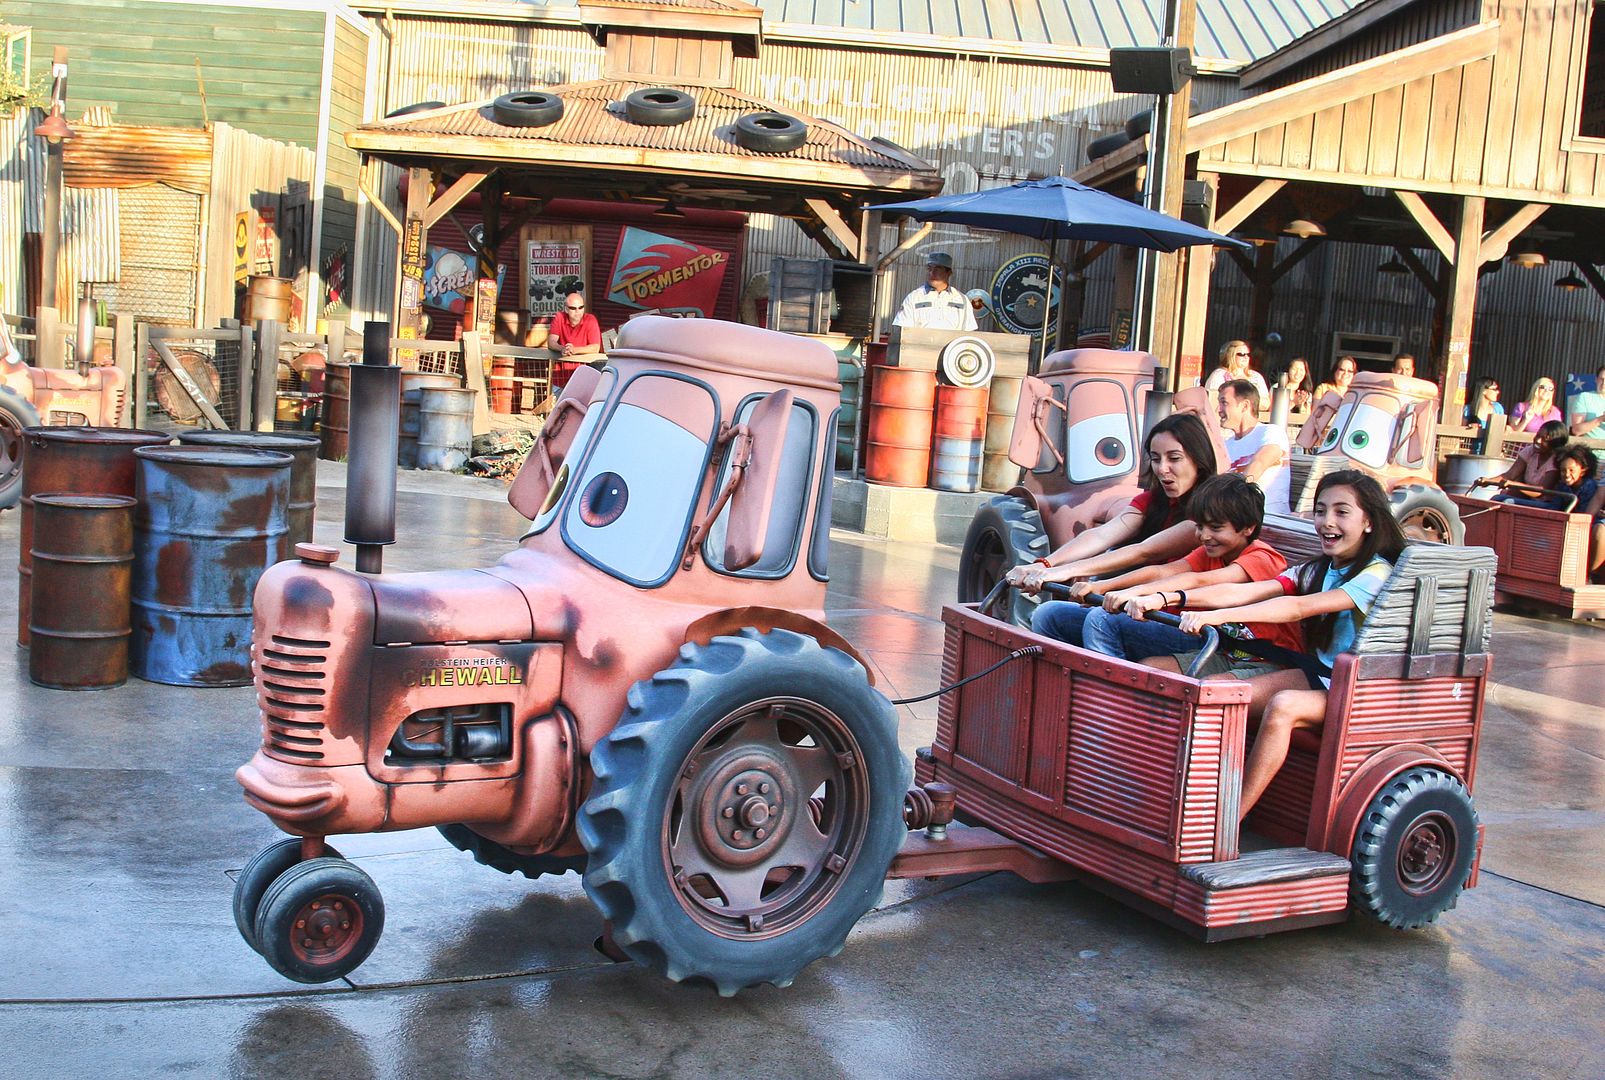 Mater's Junkyard Jamboree ride at Cars Land